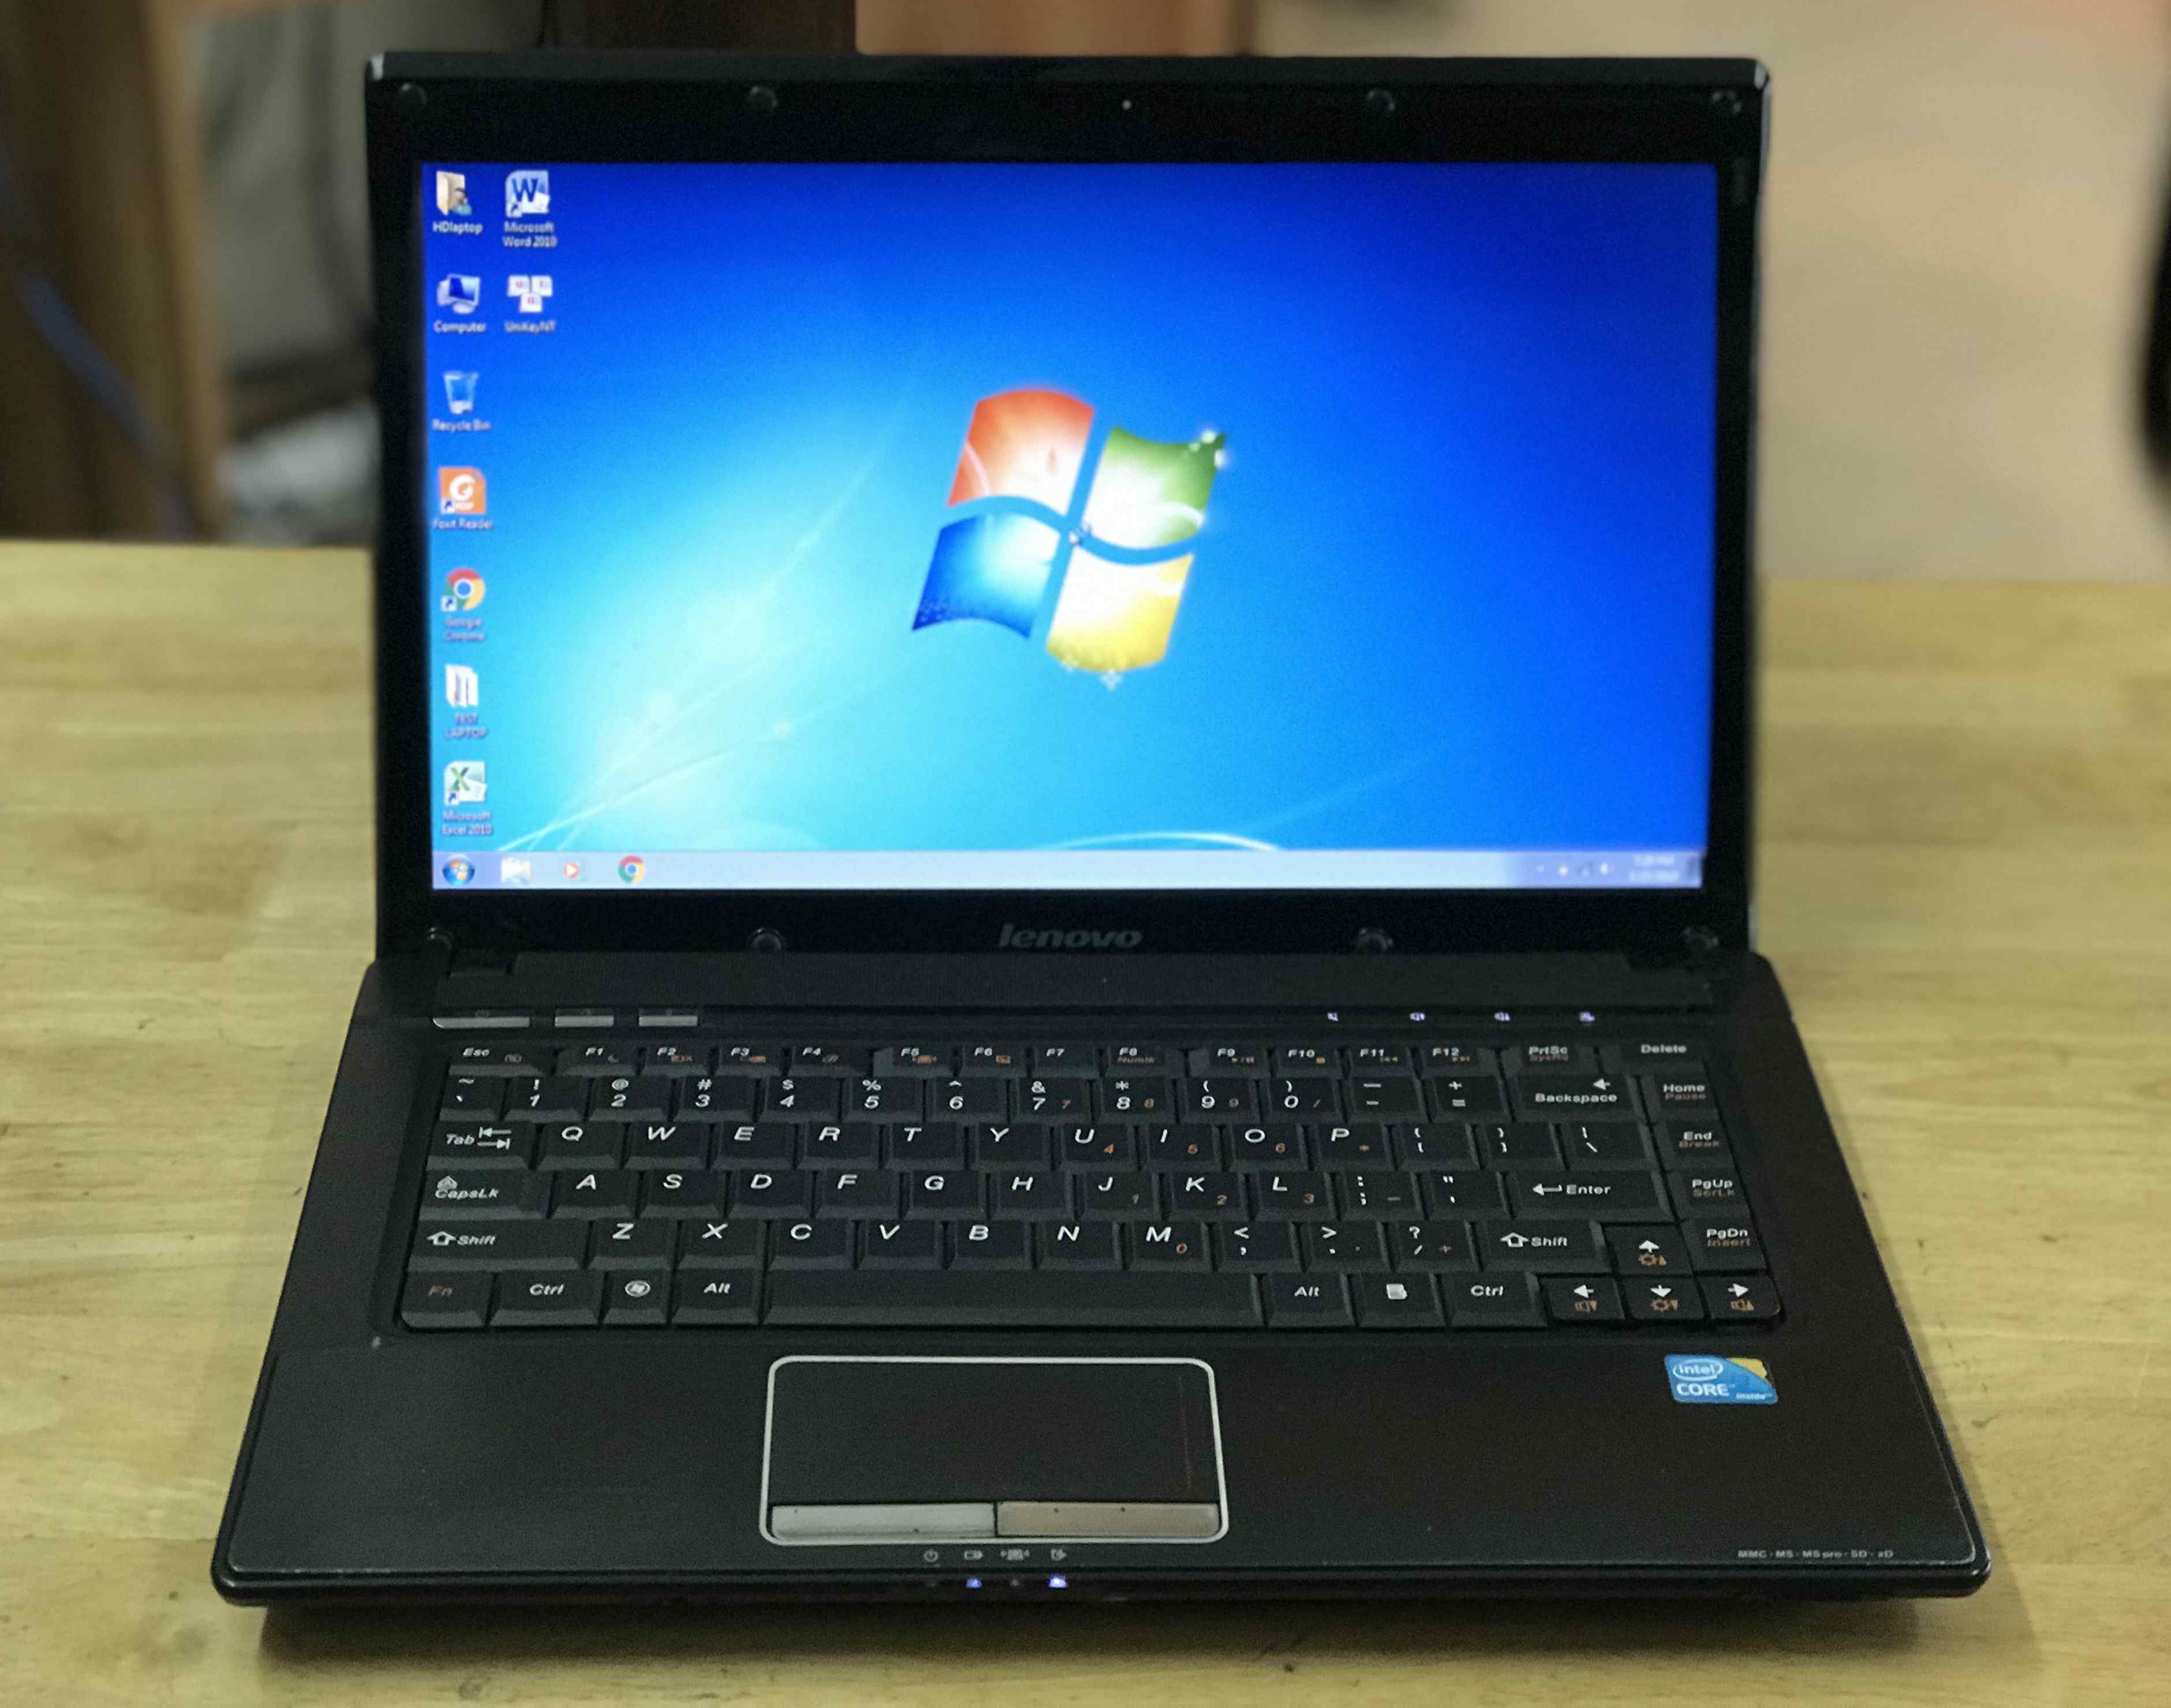 bán laptop cũ lenovo g460 giá rẻ tại hà nội